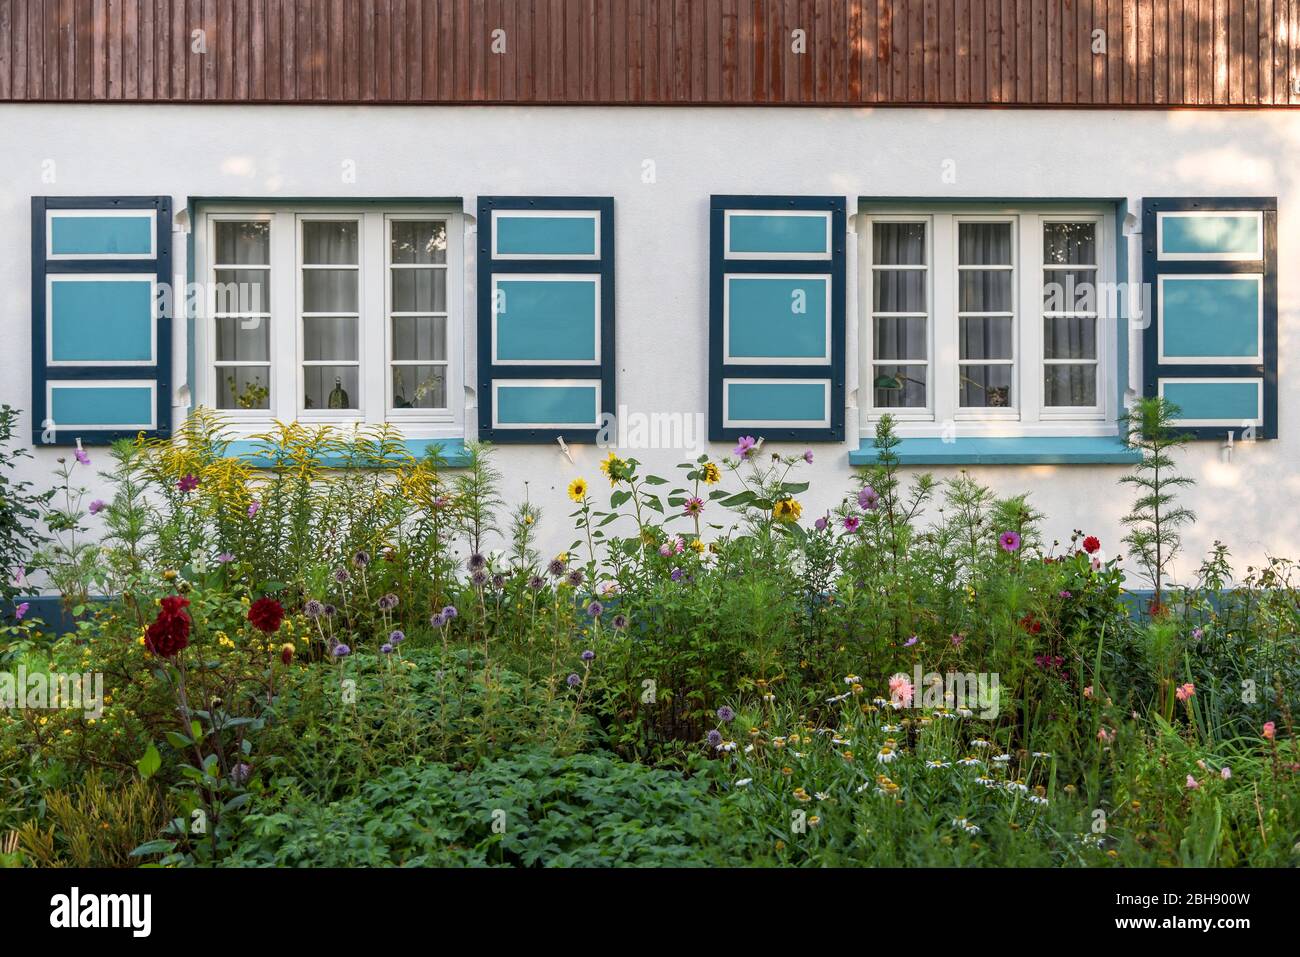 Hausfront mit bunten Fensterläden eines tyfischen Fischerhauses an der Ostsee auf dem Darß, Vorgarten mit bunten blühenden Sommerblumen Foto Stock